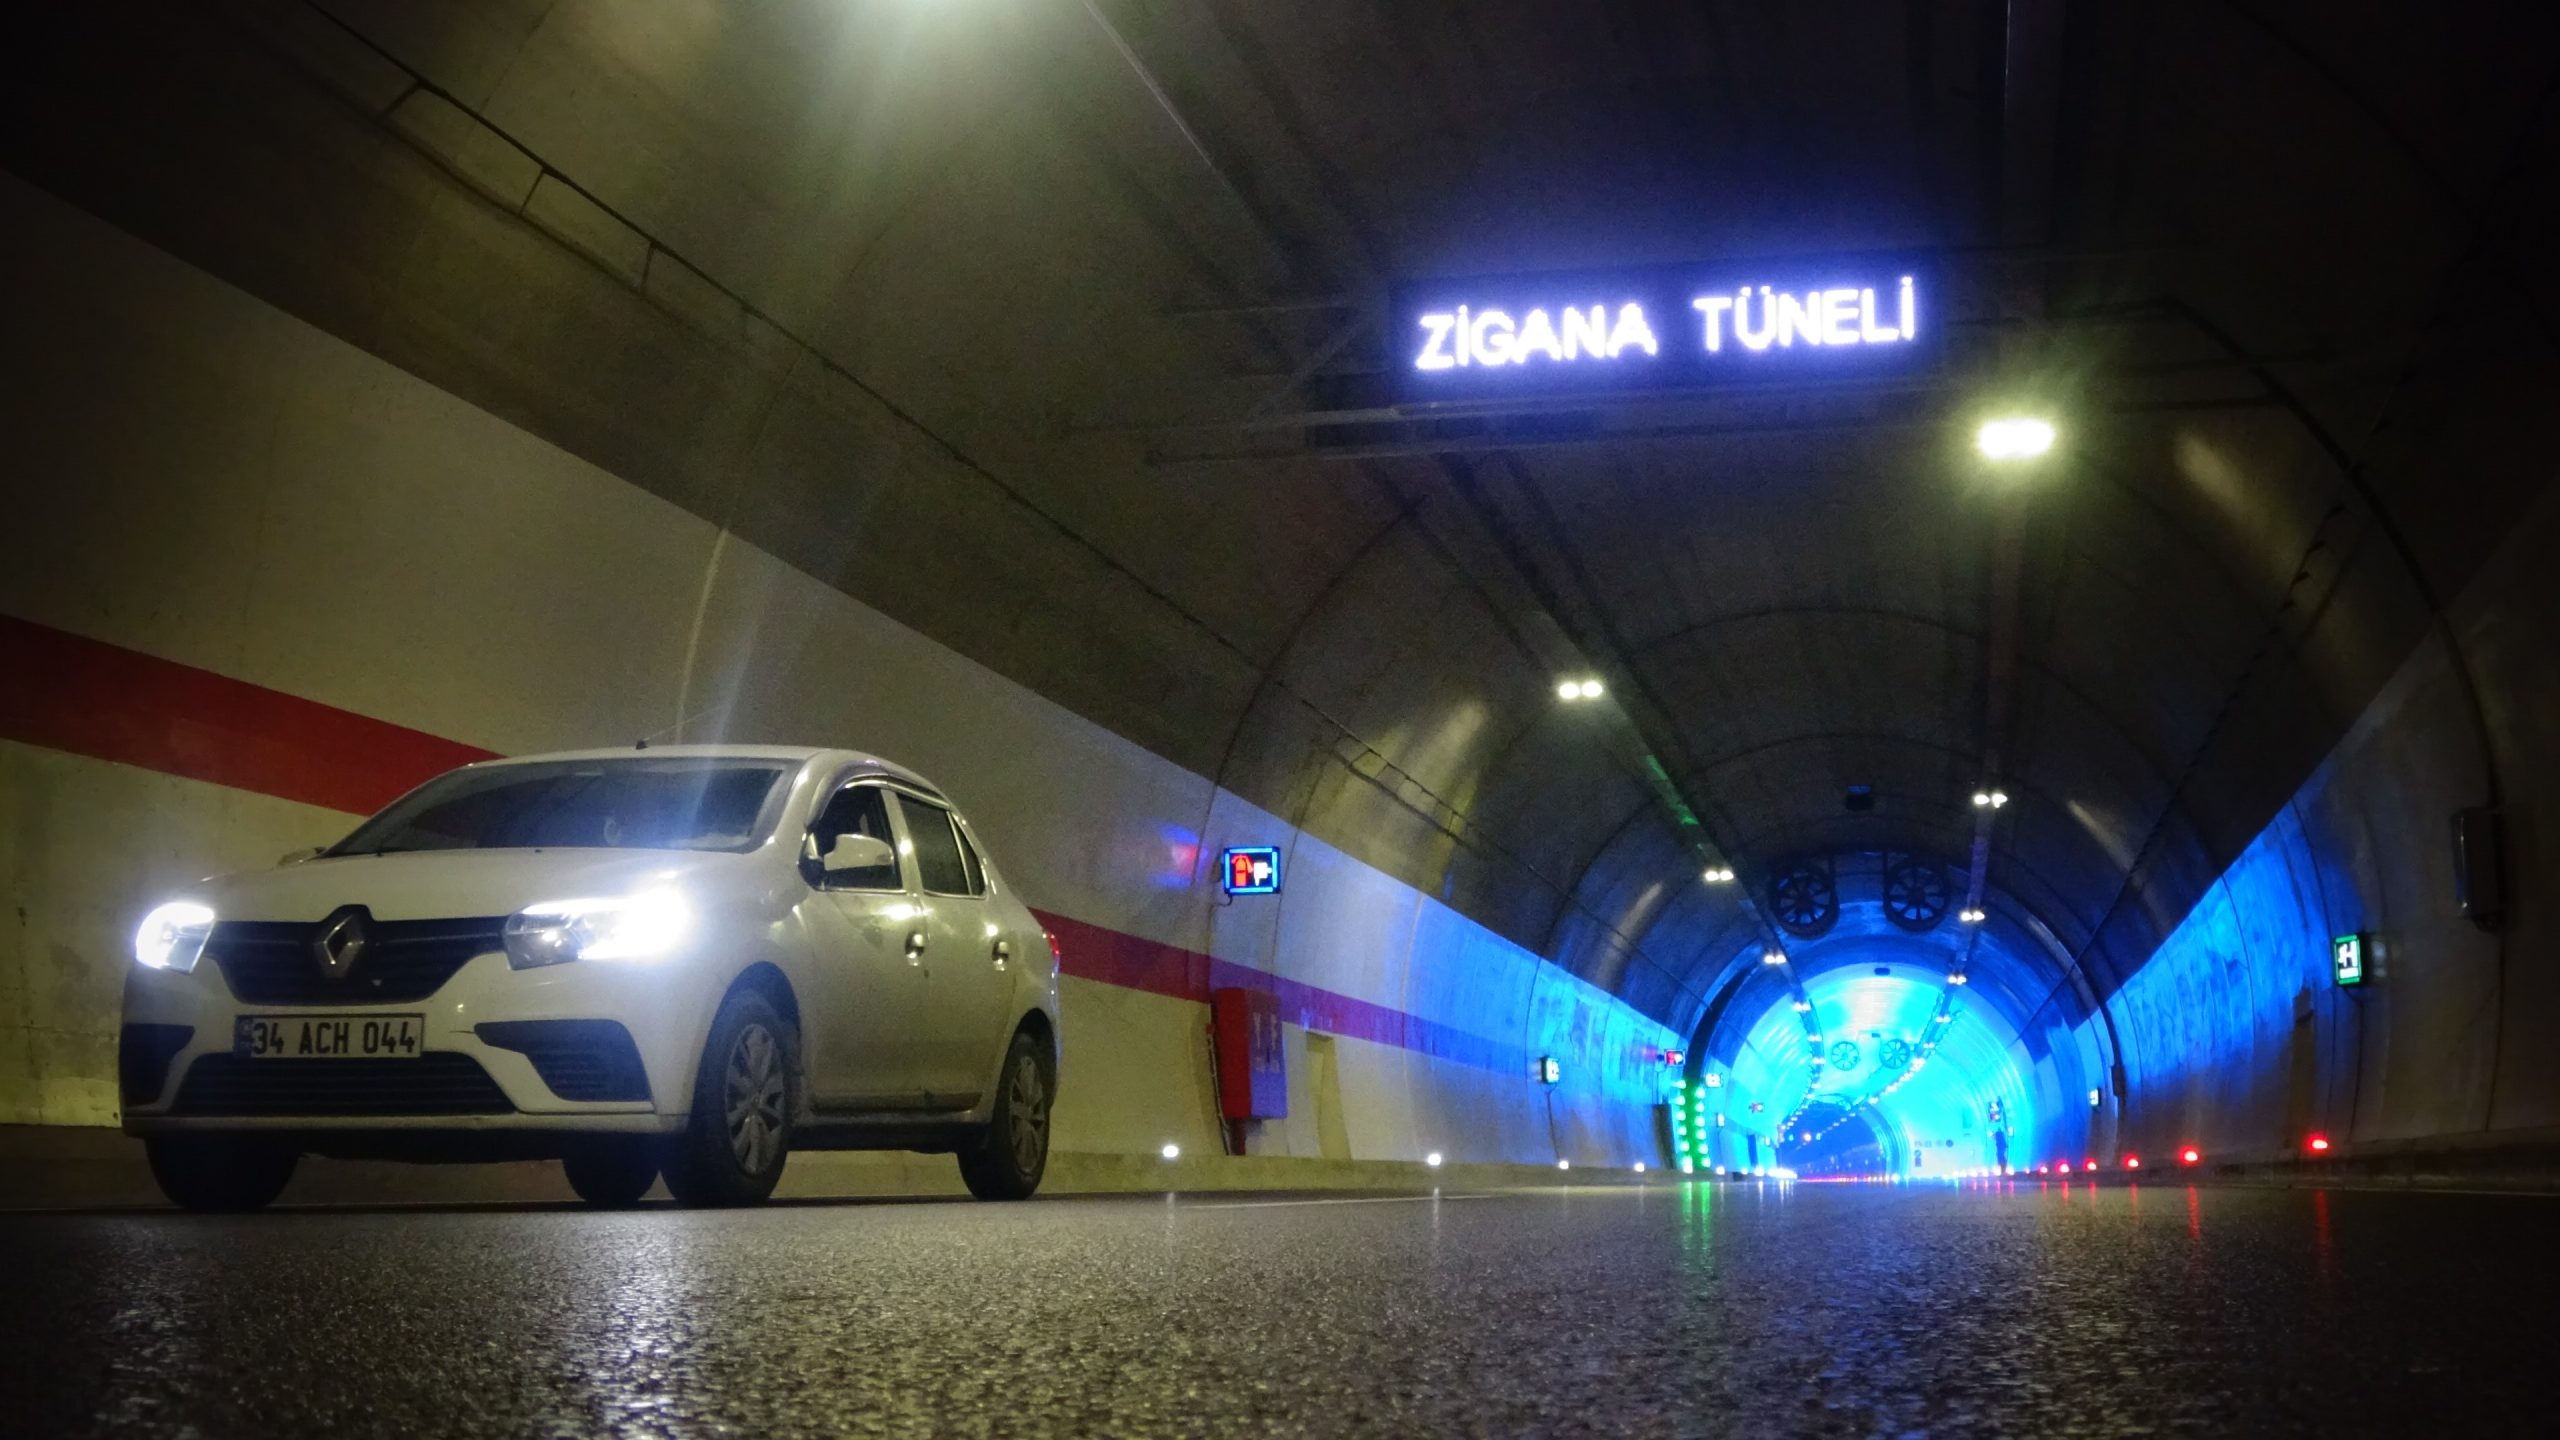 Yeni Zigana Tüneli’nden 600 bin araç geçiş yaptı